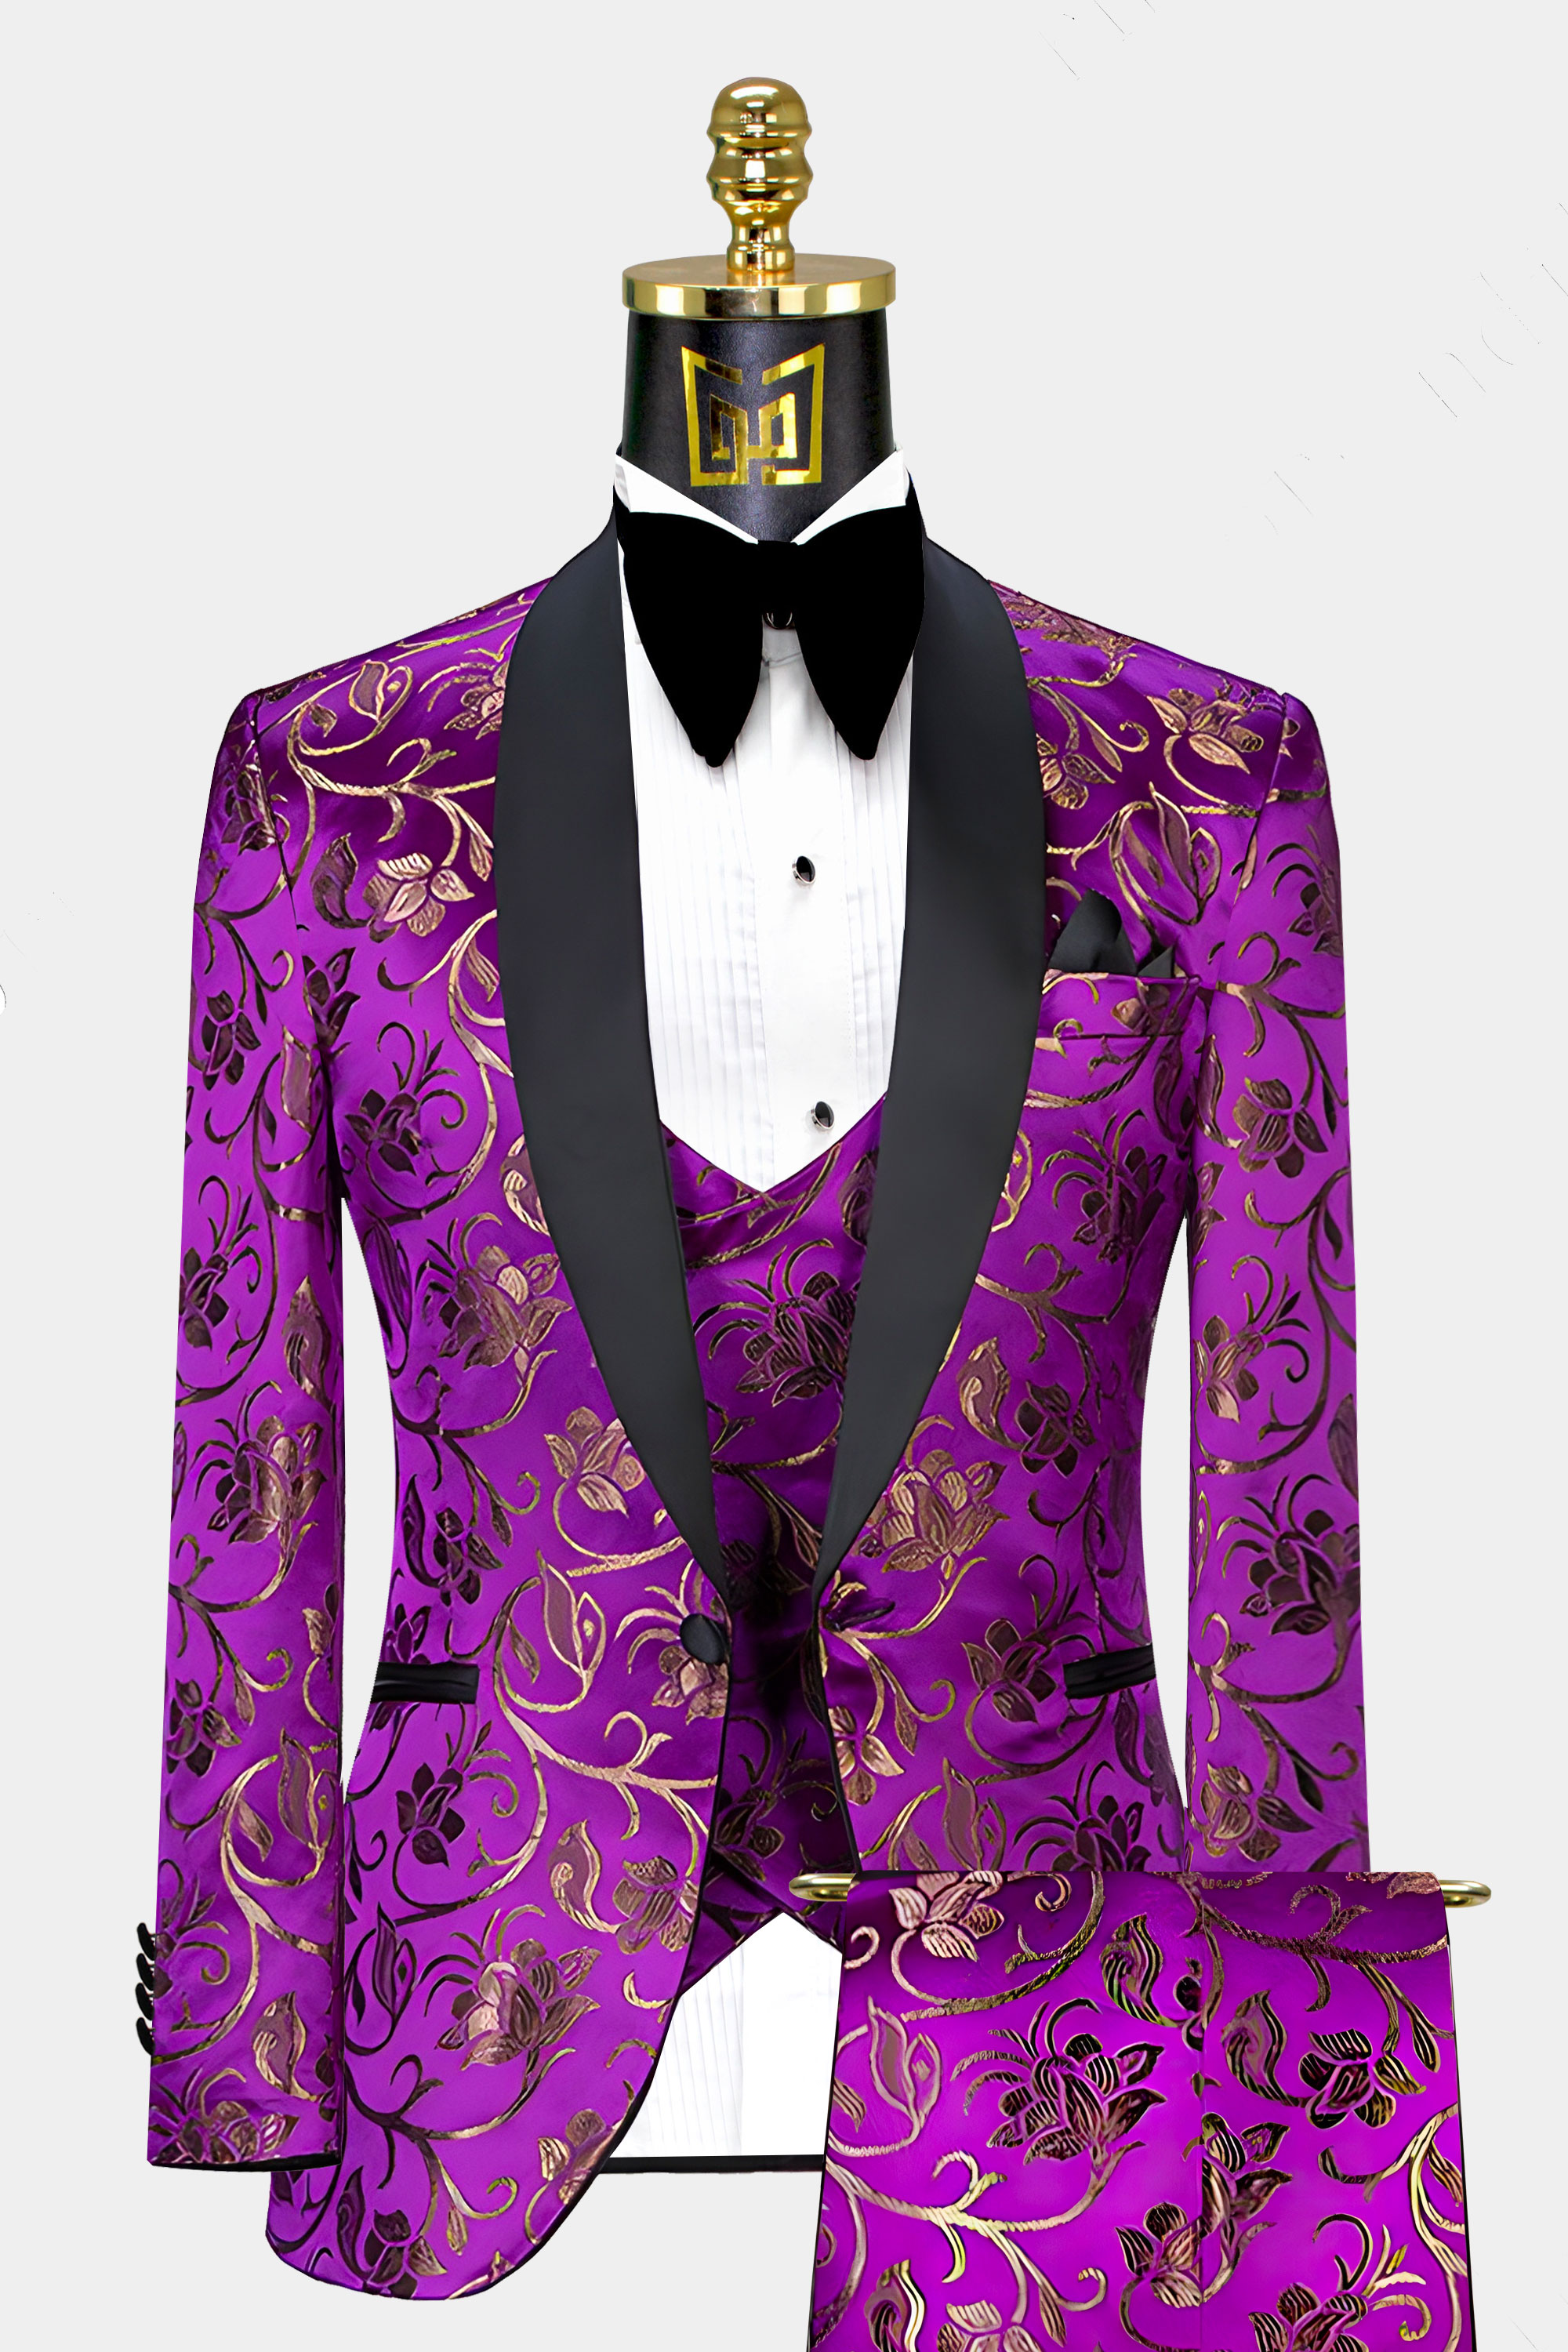 Mens-Purple-and-Gold-Tuxedo-Wedding-Groom-Prom-Suit-from-Gentlemansguru.com